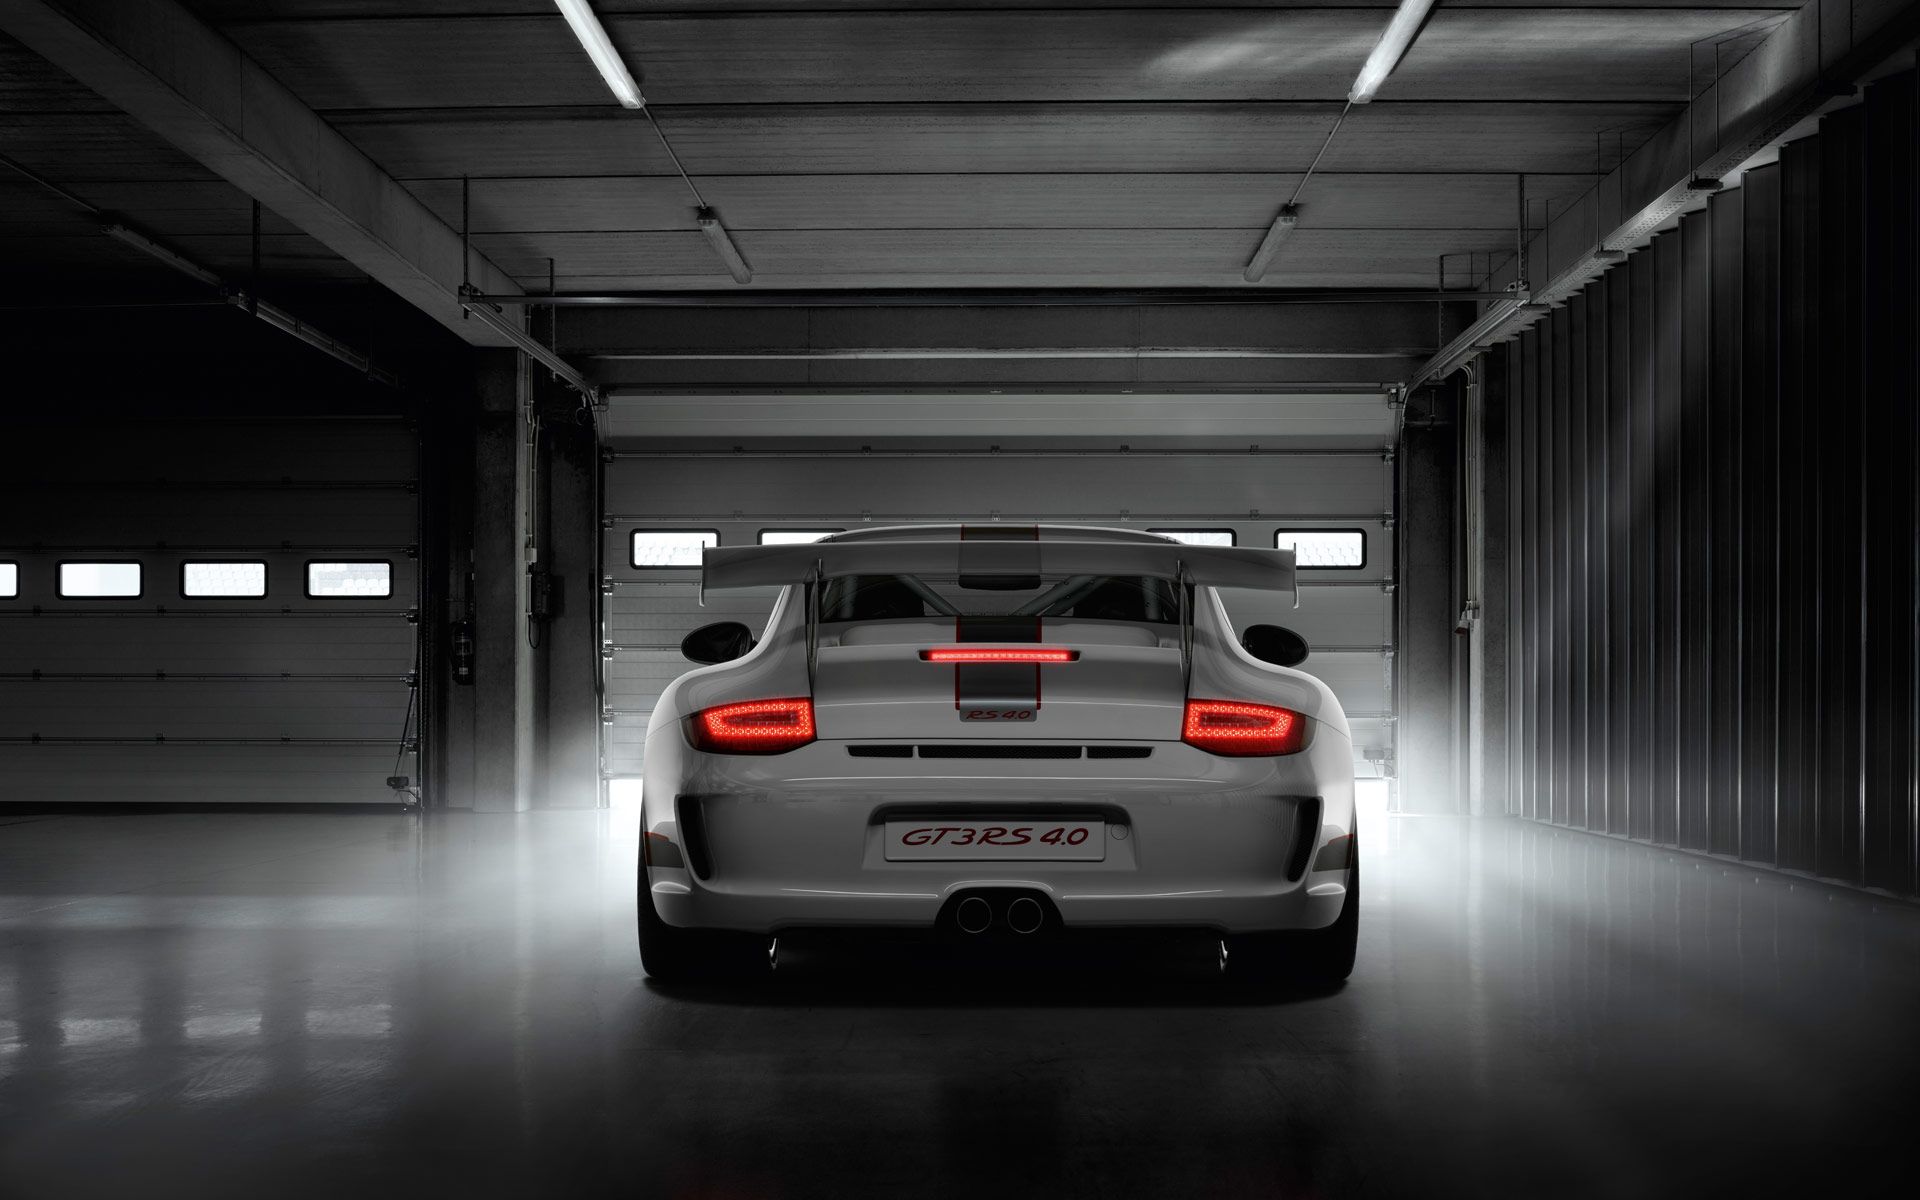 Porsche Gt3 Rs Wallpapers